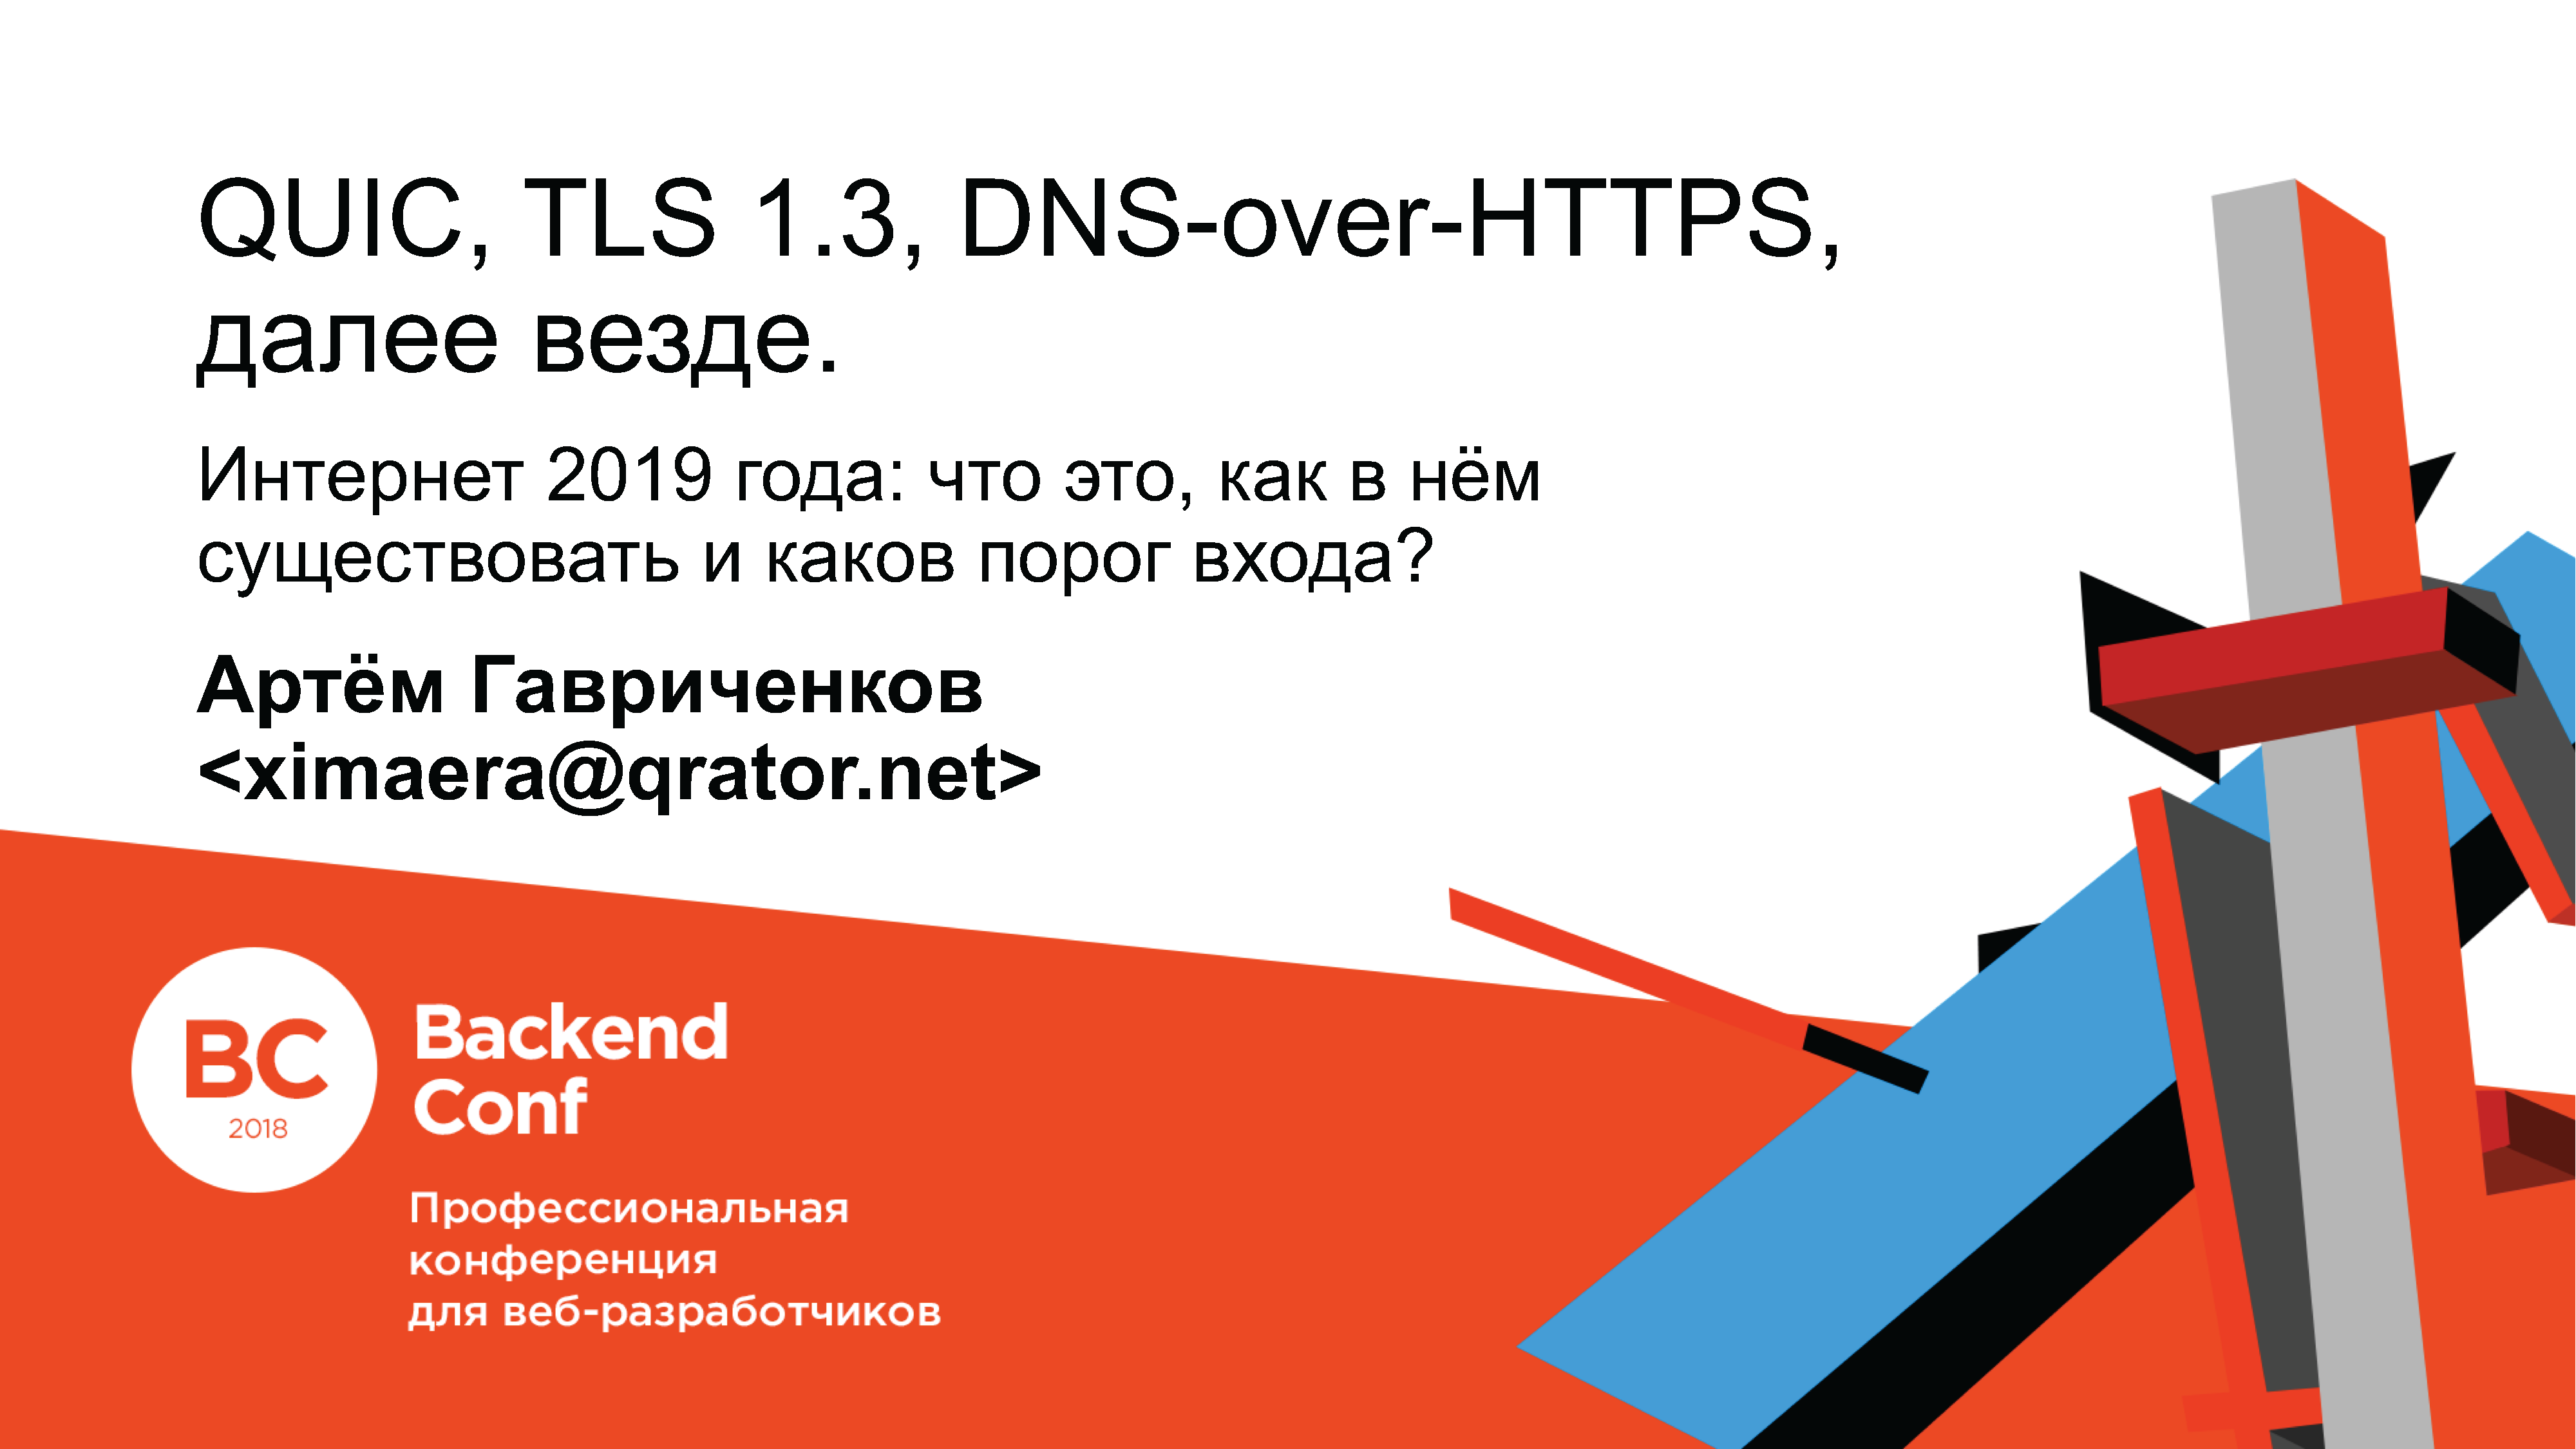 QUIC, TLS 1.3, DNS-over-HTTPS, далее везде - 1